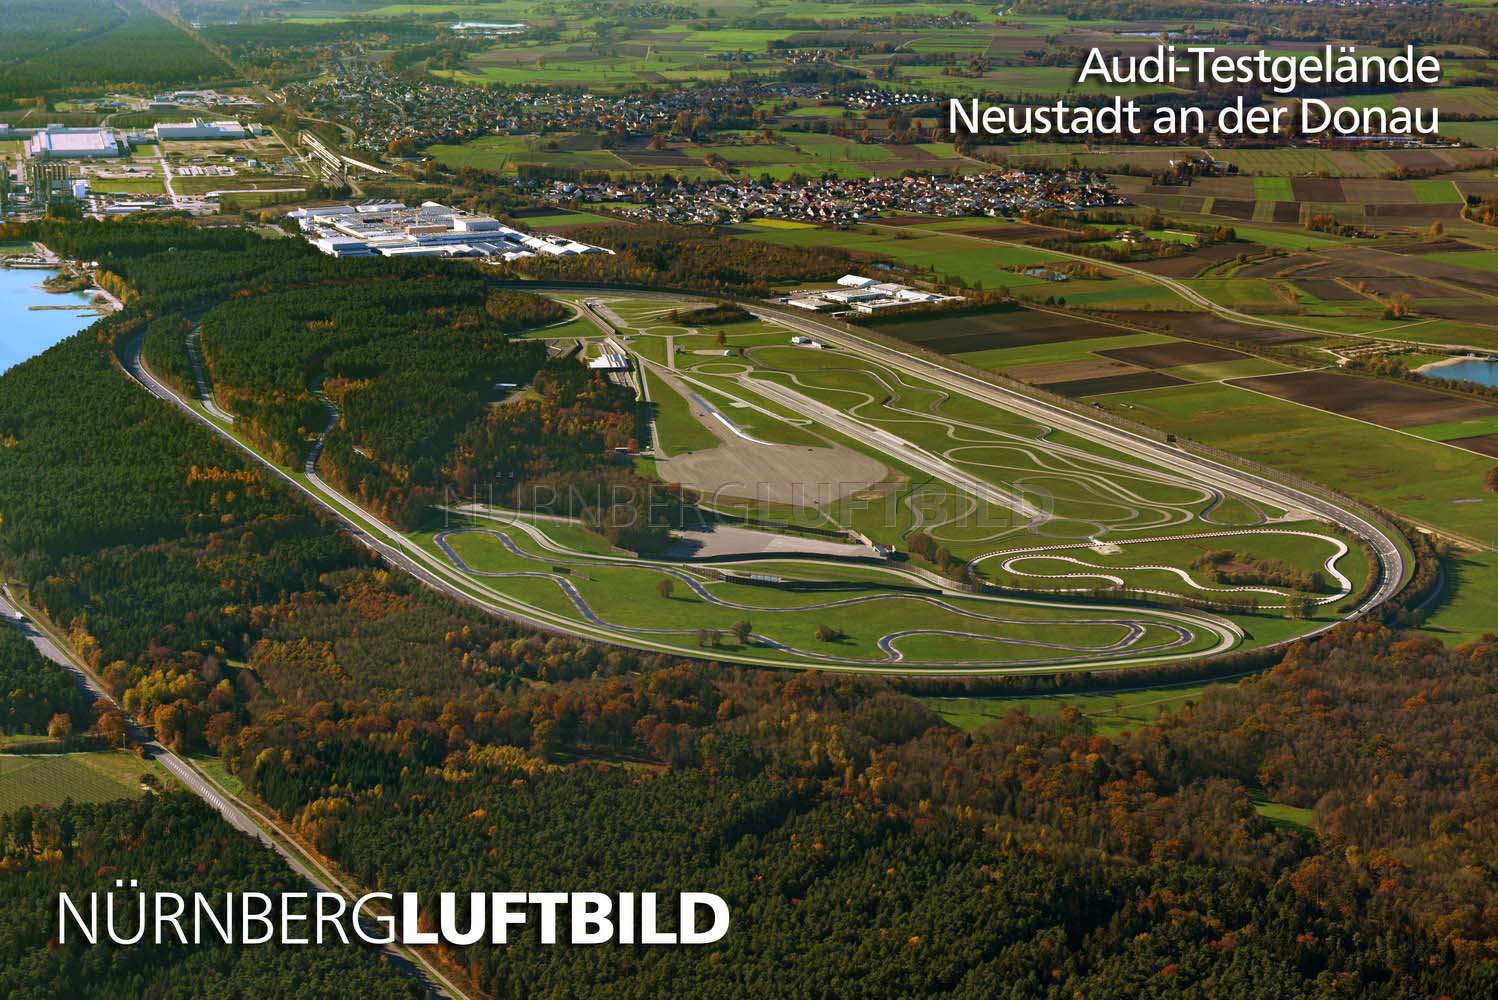 Audi-Testgelände, Neustadt an der Donau, Luftbild